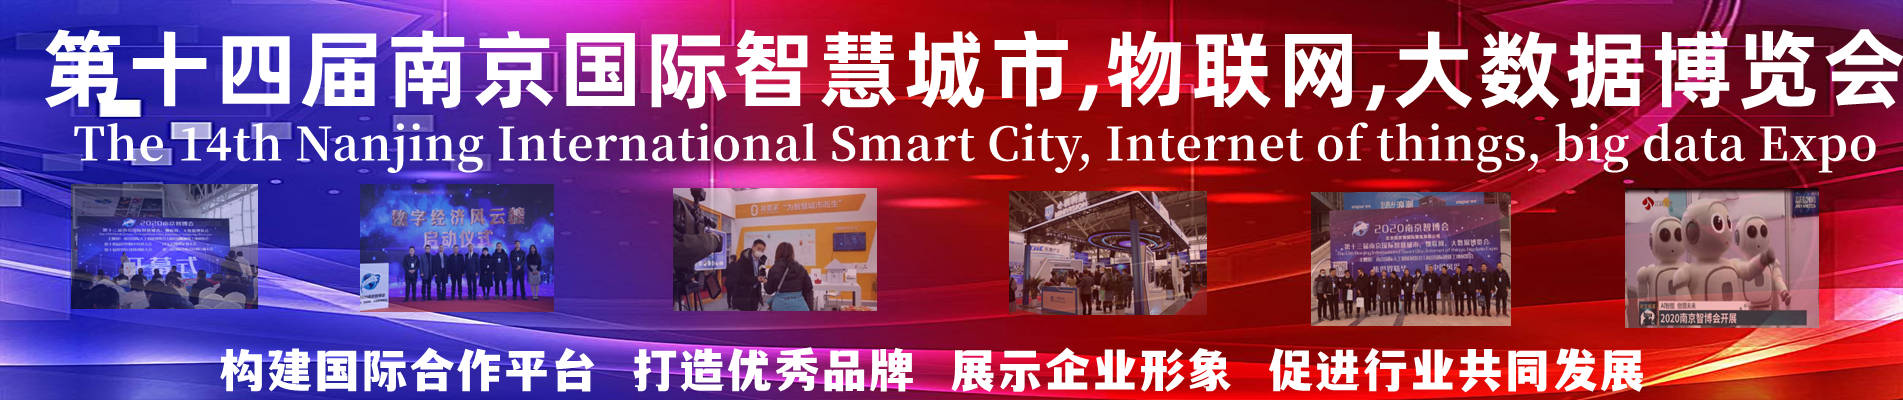 2022南京智博会|第十四届南京国际智慧城市,物联网,大数据博览会